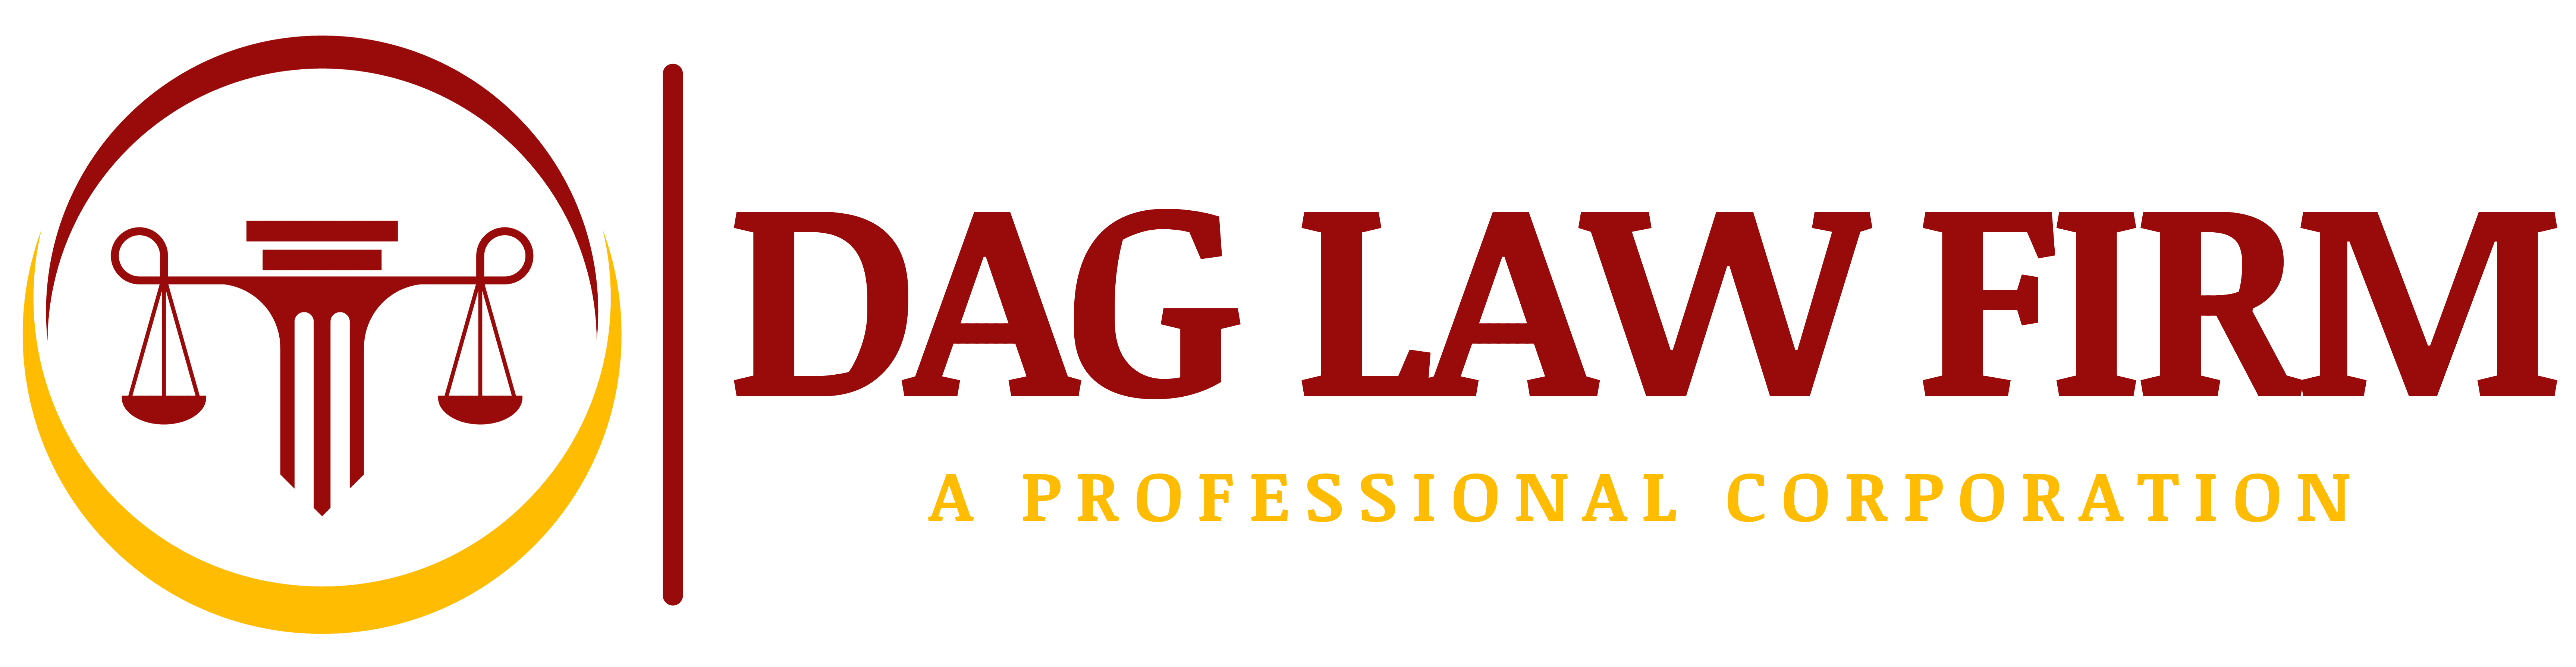 dag law firm logo